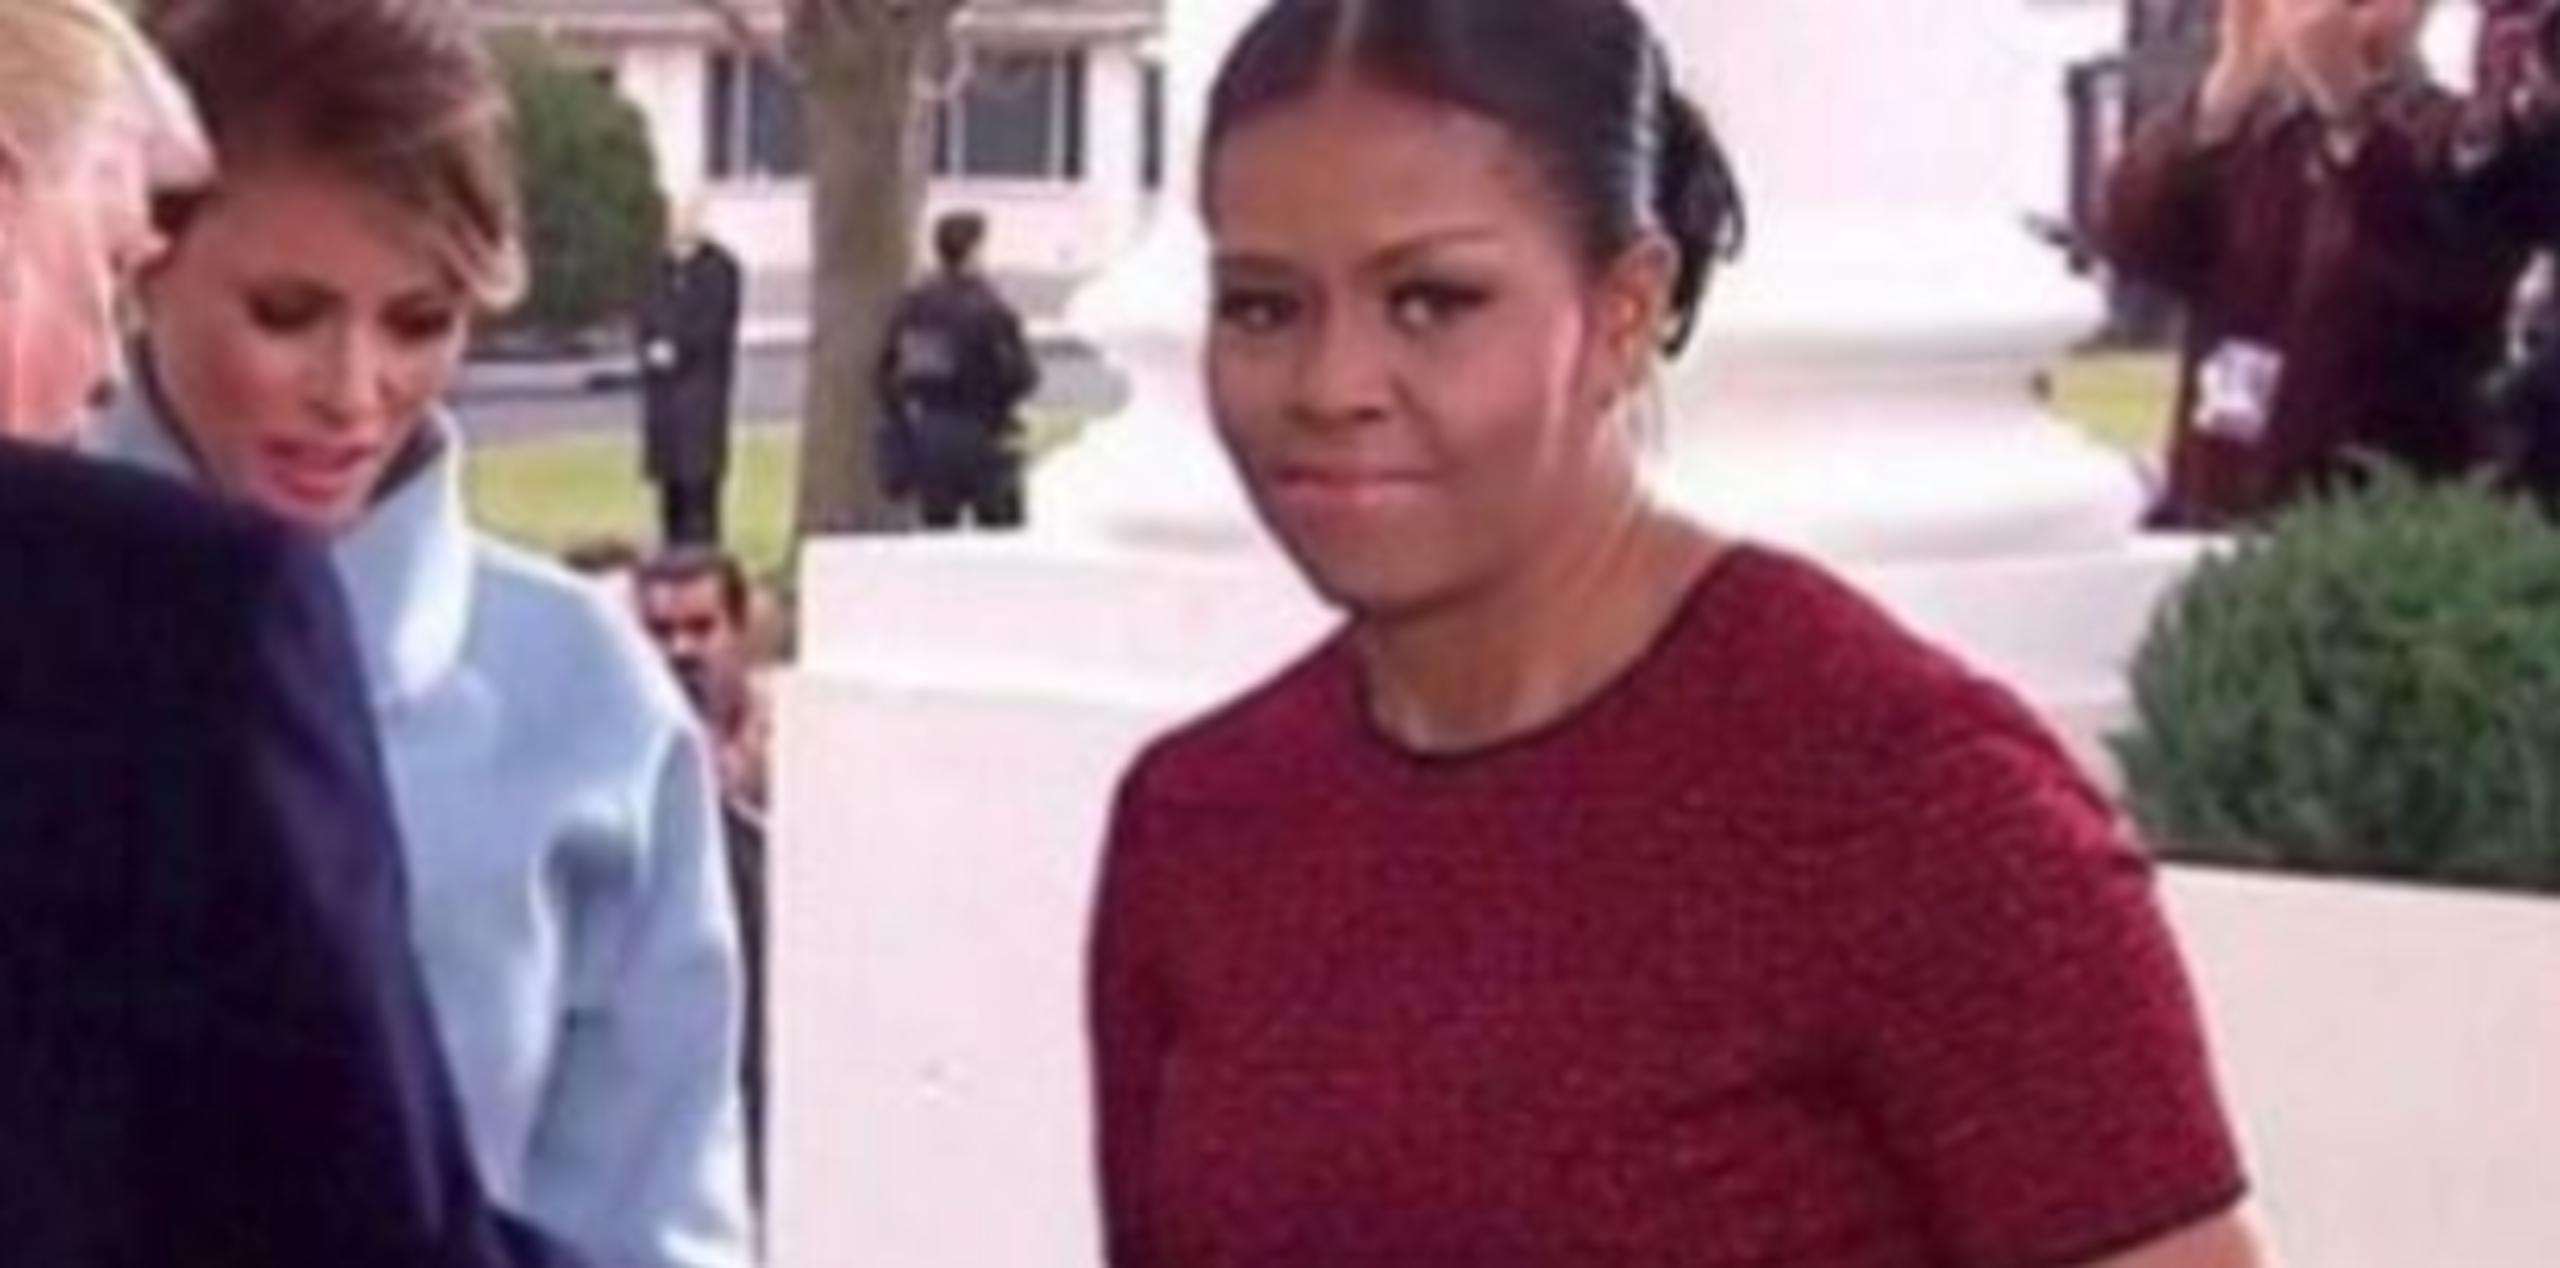 Michelle Obama no encontró a quién encargar el obsequio y su cara demostró su incomodidad.  (Twitter)